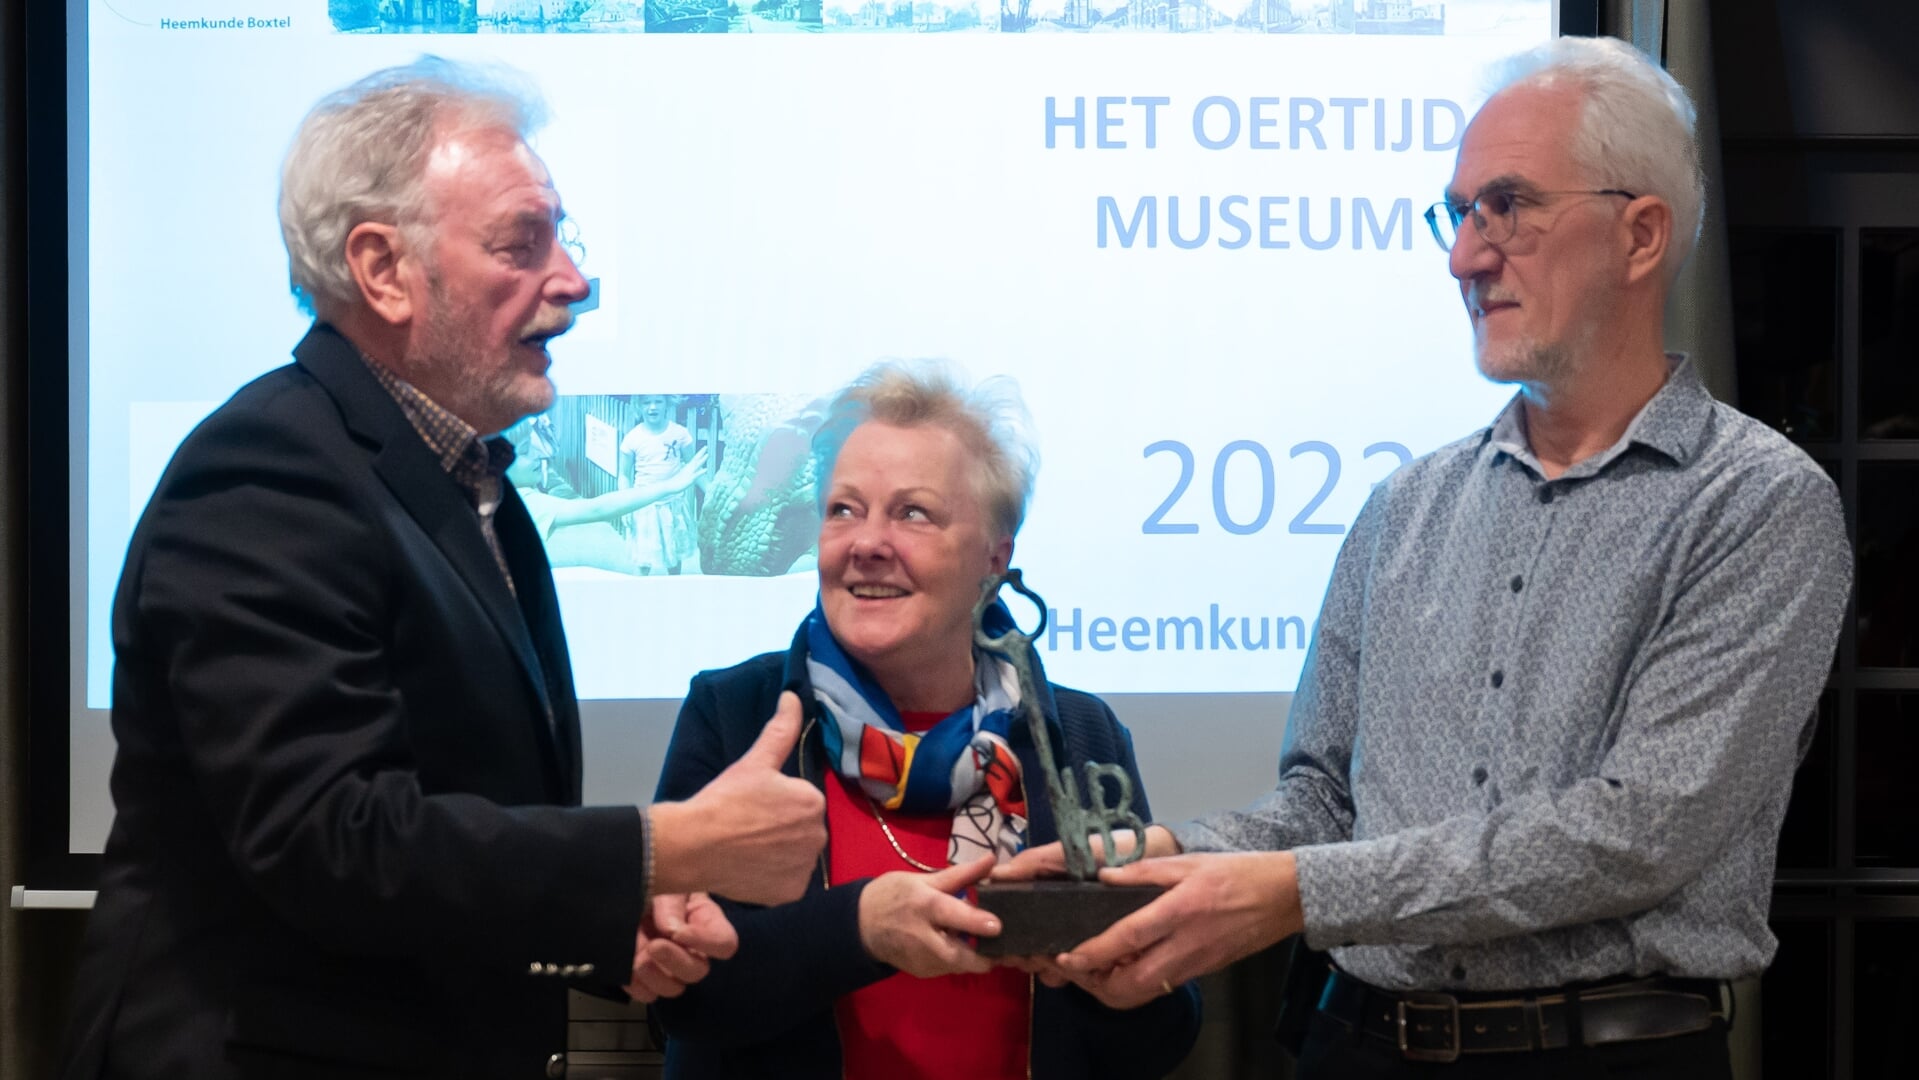 Heemkundevoorzitter Henk van Beers (links) reikte wisseltrofee aan directeur René Fraaije van het Oertijdmuseum Boxtel. In het midden echtgenote Thea Fraaije-van Boom. 